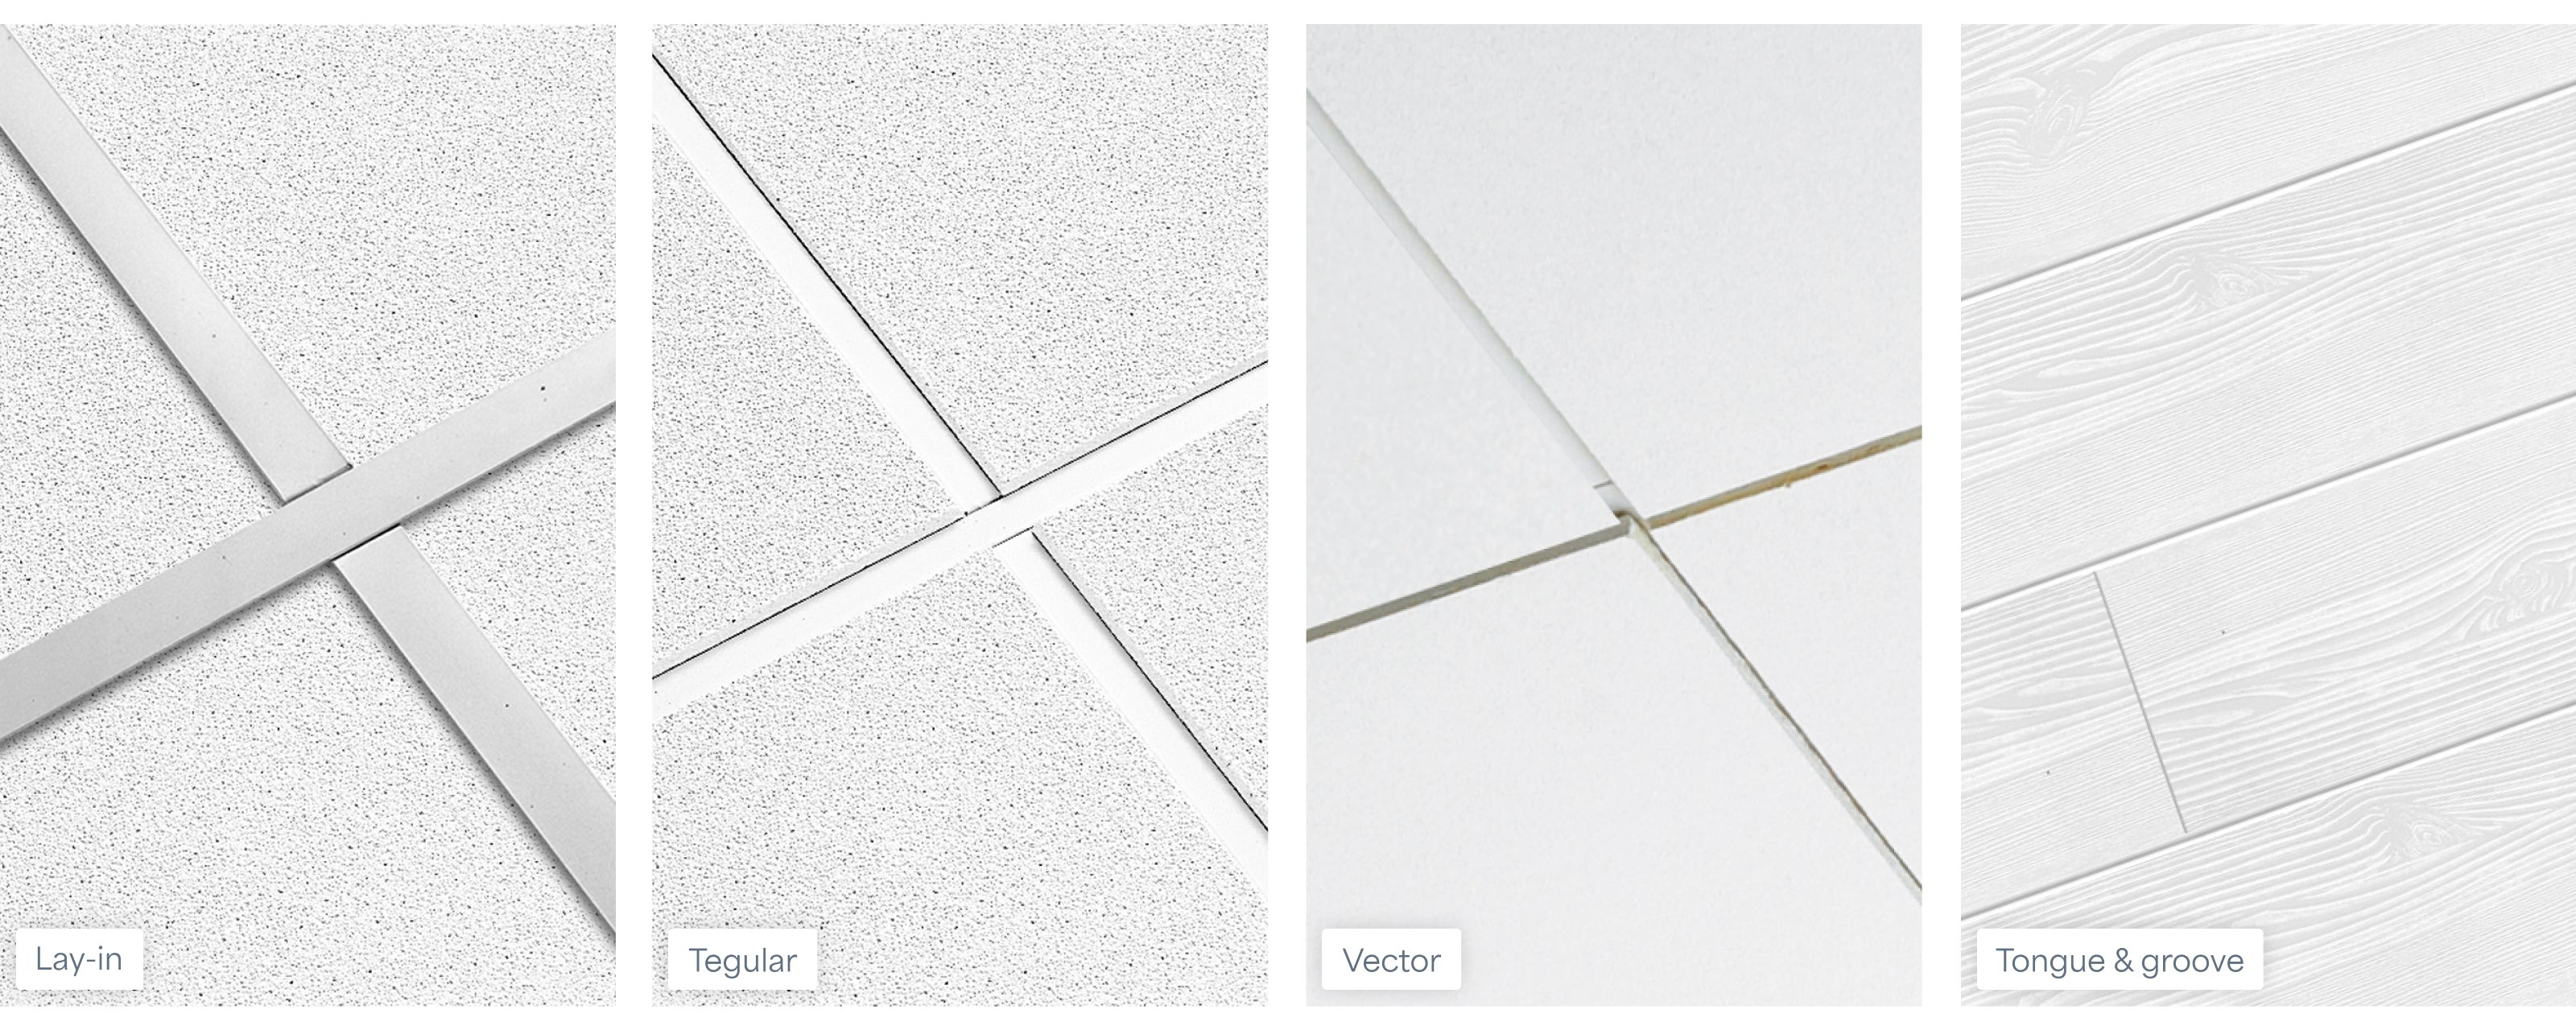 4 Ceiling Tile Edge Types Explained